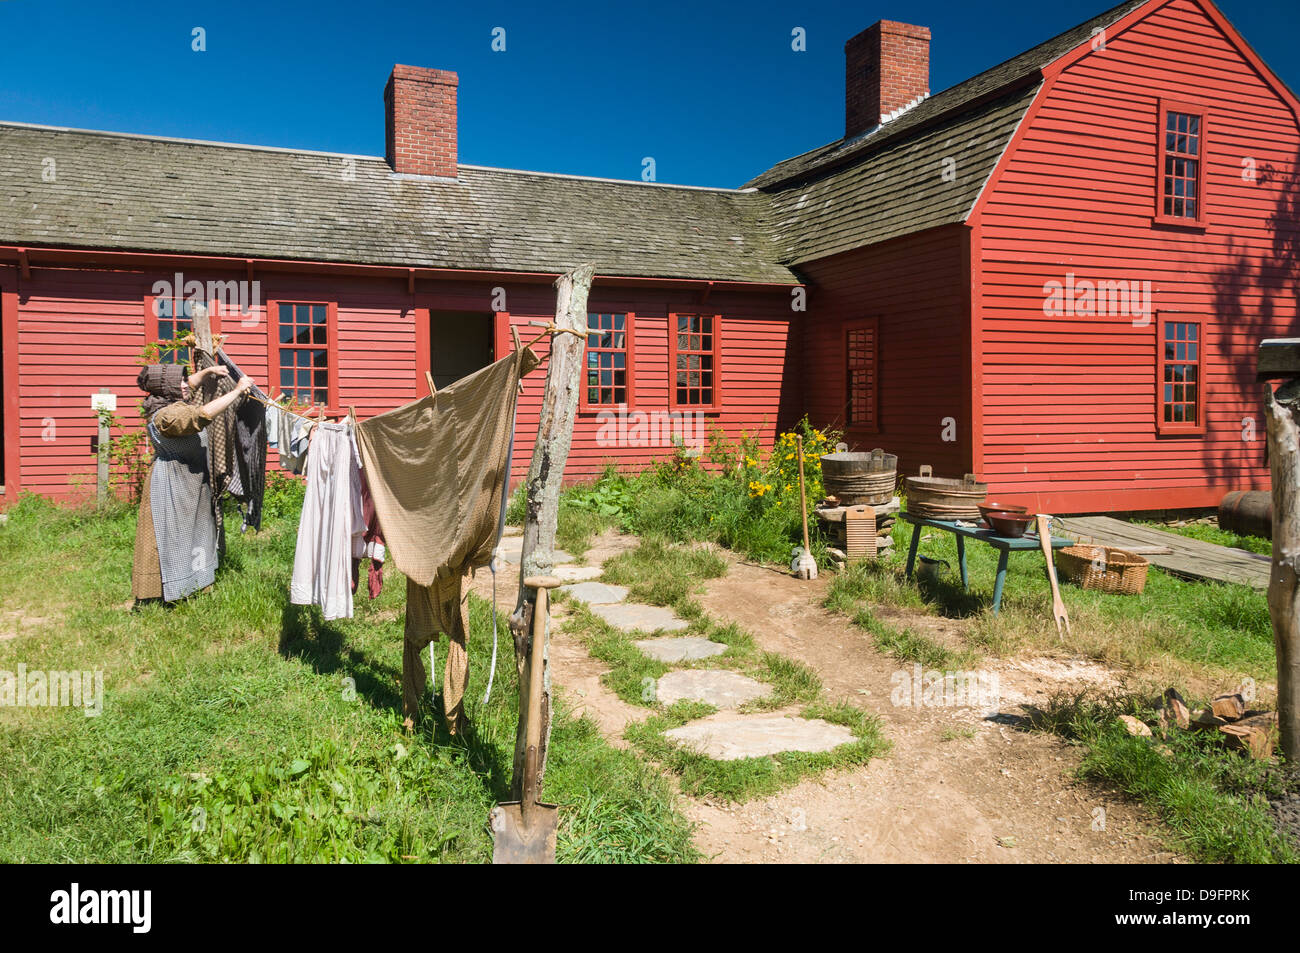 Recréer des temps passés à Old Sturbridge Village, un musée retraçant la vie de la Nouvelle-Angleterre au début, Massachusetts, New England, USA Banque D'Images